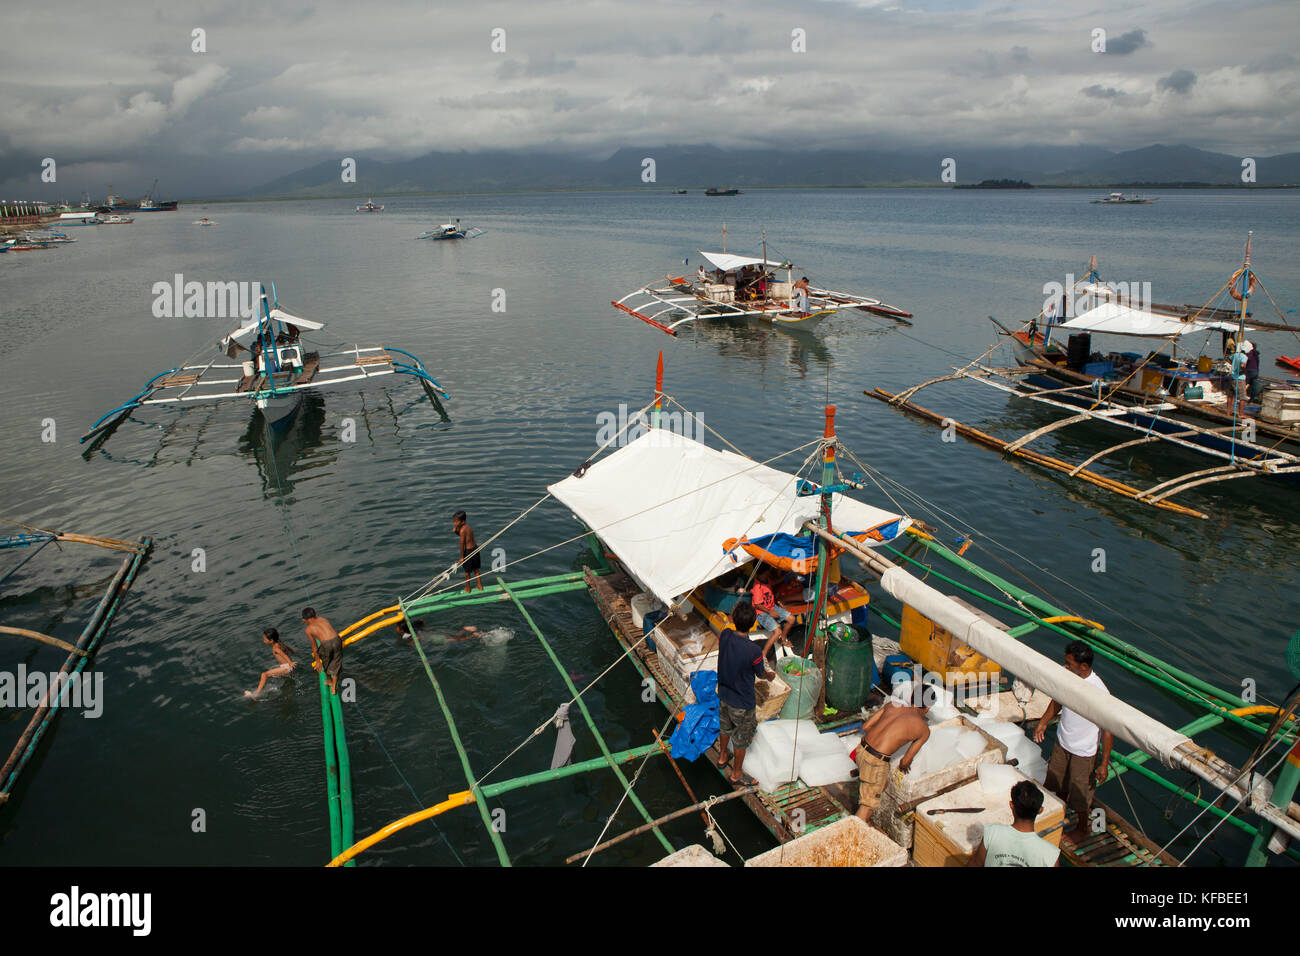 Philippinen, Palawan, Puerto Princesa, handline Fischer in der Stadt Port geladen, Boote mit Eis und für eine Woche lange Reise vorbereiten Stockfoto